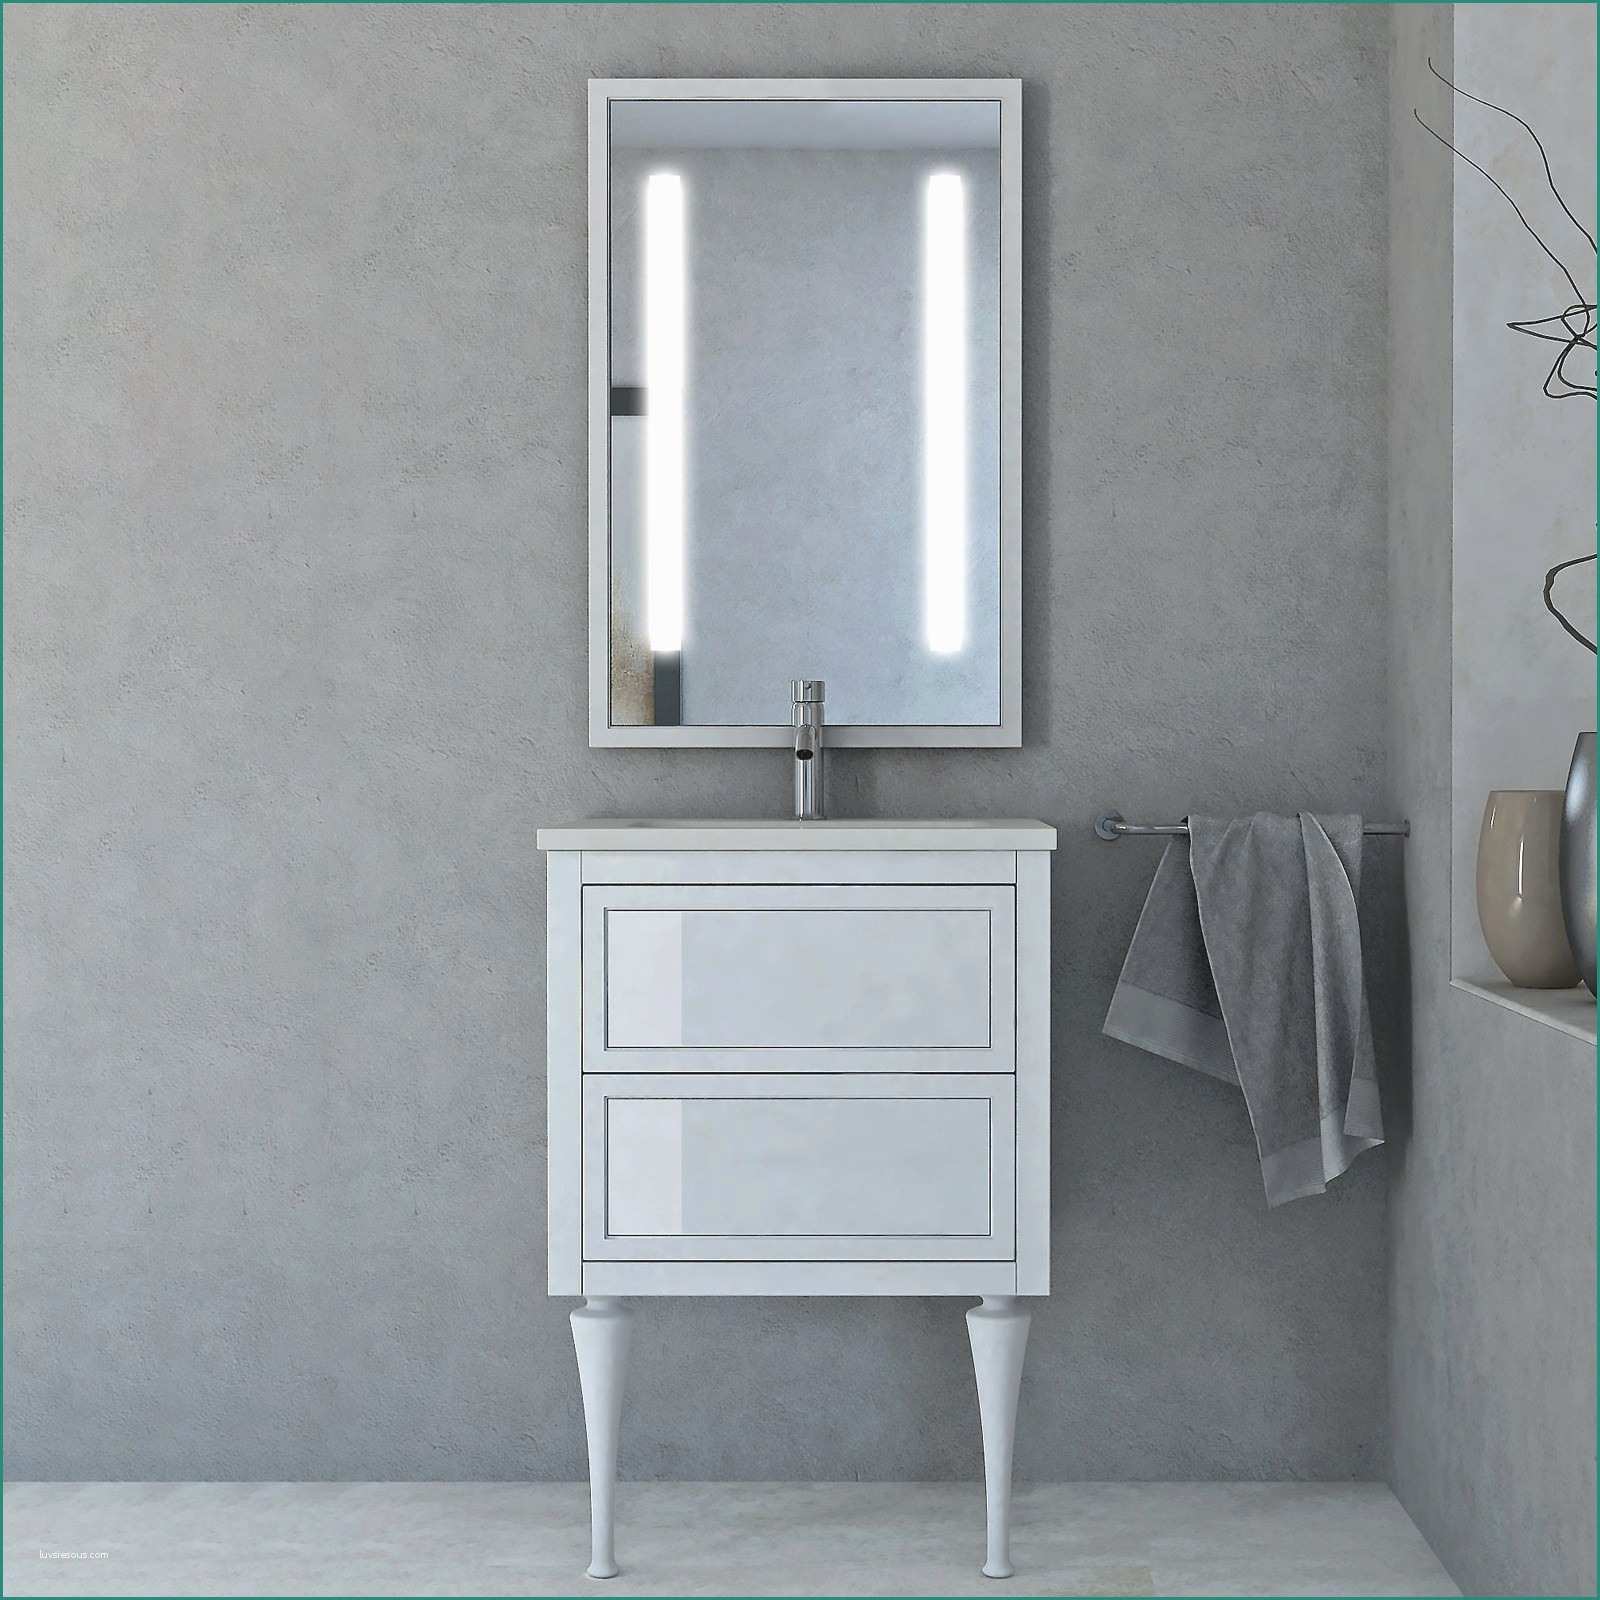 Lavandino Con Mobile Bagno E Specchi Da Arredo ispiratore Elegante Arredo Bagno Ikea Casa Design